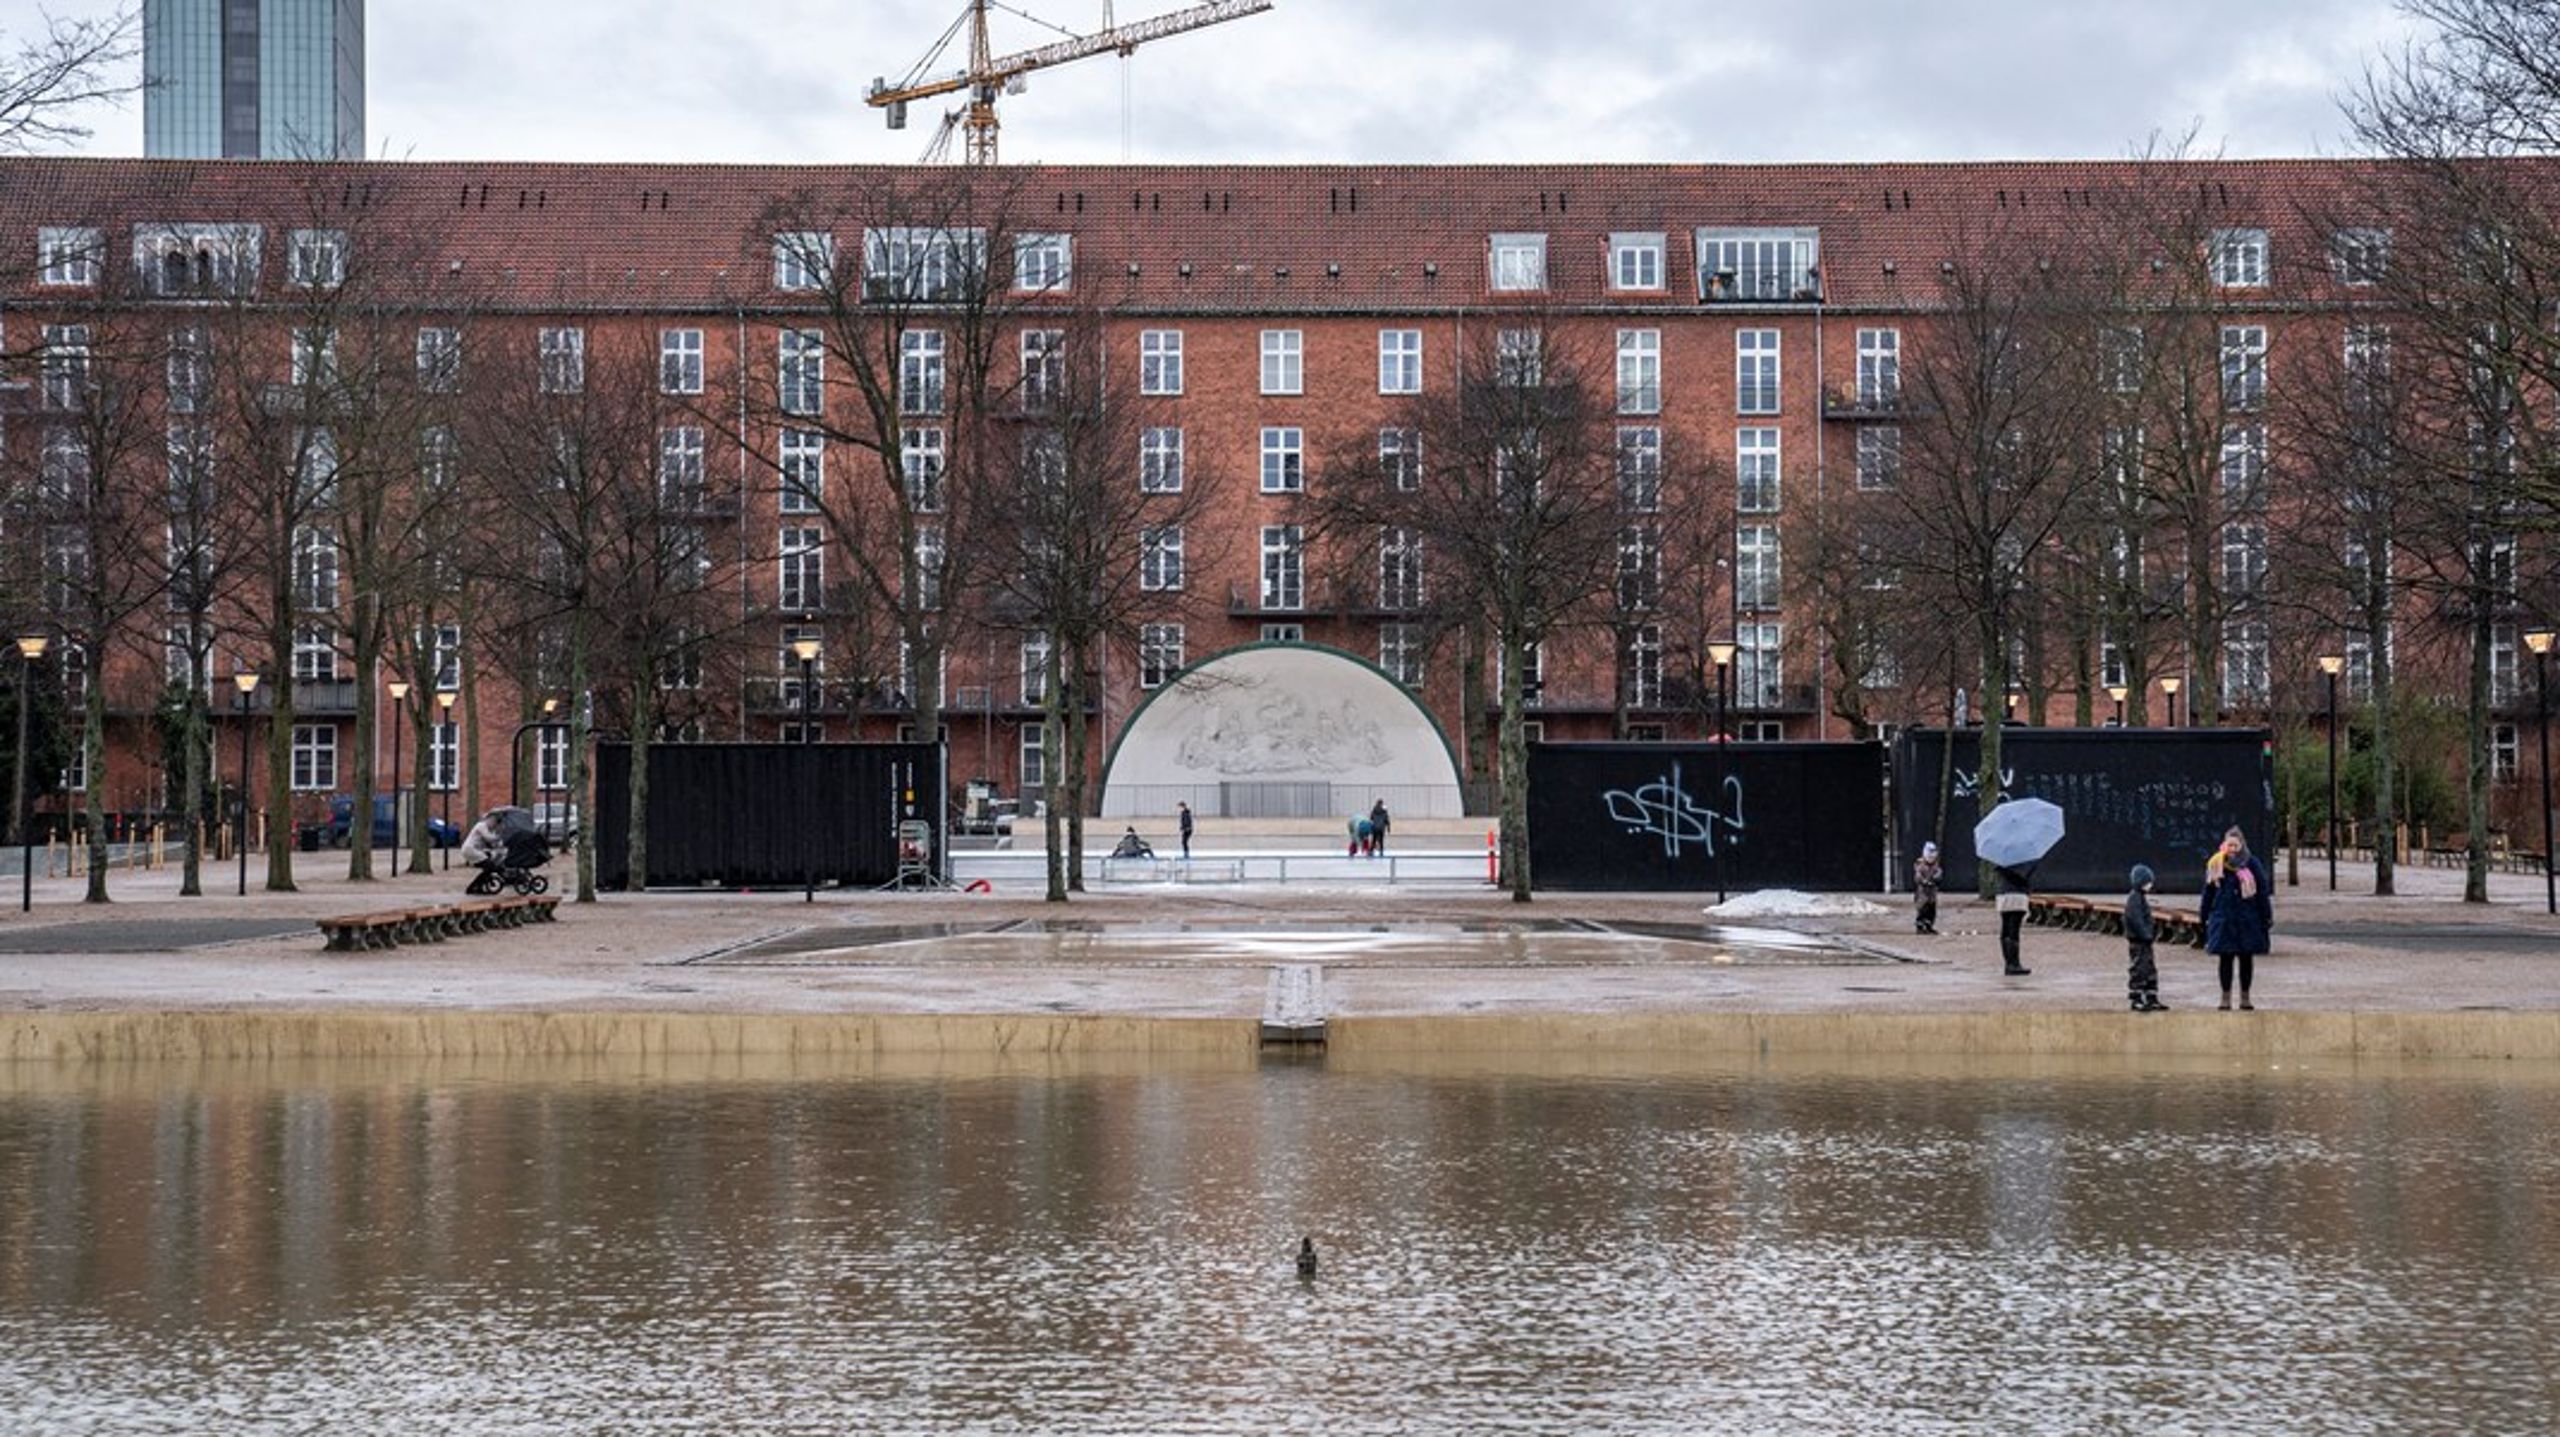 Efter renoveringen af Enghaveparken på Vesterbro i København kan parken nu samle 22.600 kubikmeter skybrudsvand. Regnvand fra parken kan
genanvendes til for eksempel vanding, skriver&nbsp;Henrik
Winther.